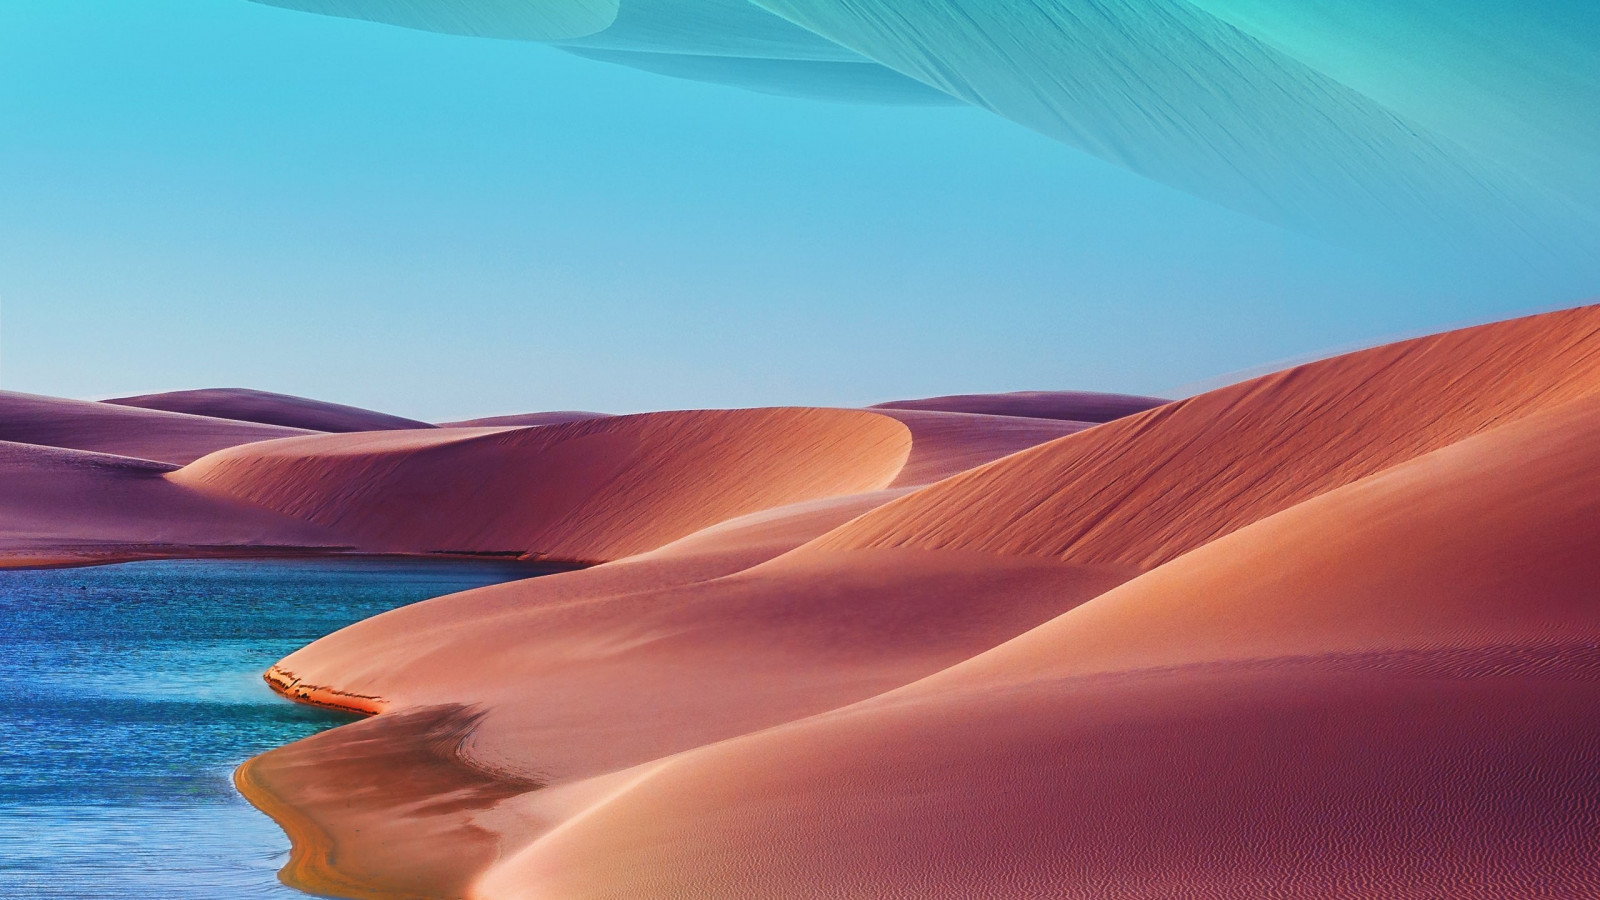 Desert dunes, lake, blue sky, hot day wallpaper 1600x900